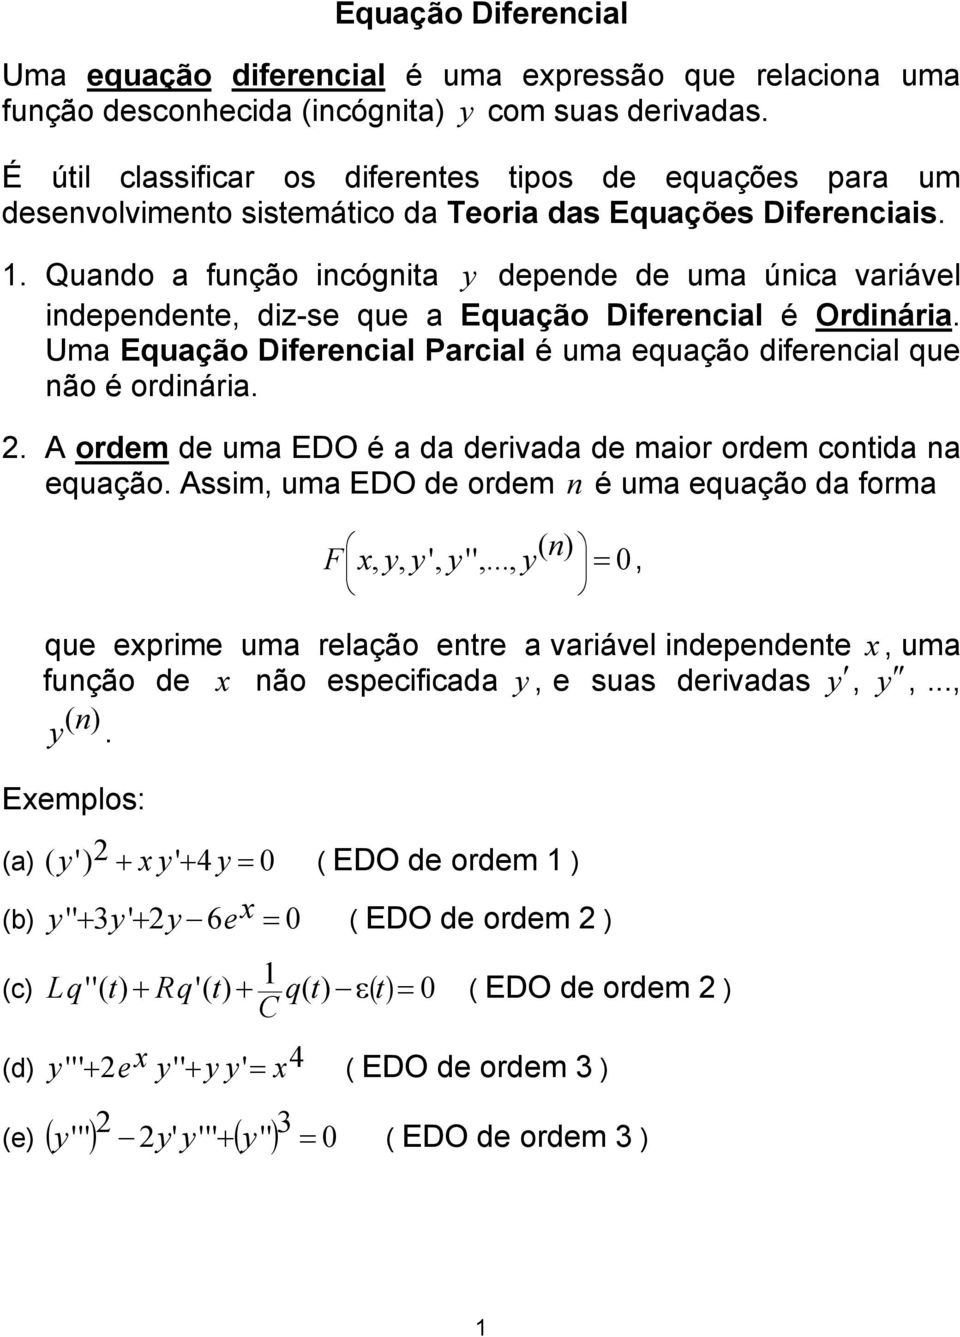 ordiária A ordem de uma EDO é a da derivada de maior ordem otida a equação Assim uma EDO de ordem é uma equação da forma ' '' ( ) F que eprime uma relação etre a variável idepedete uma fução de ão